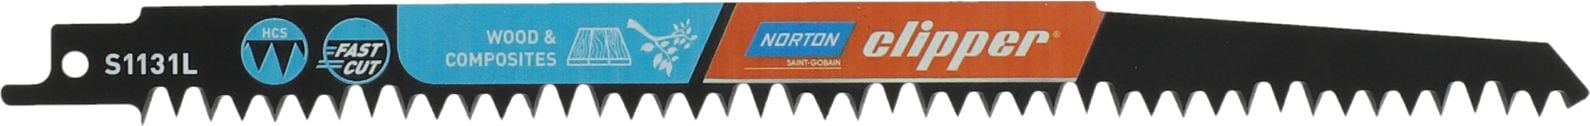 Norton Clipper NORTON BLADE S1131L 240mm /2buc.LEMN tare, ramuri N70184608361